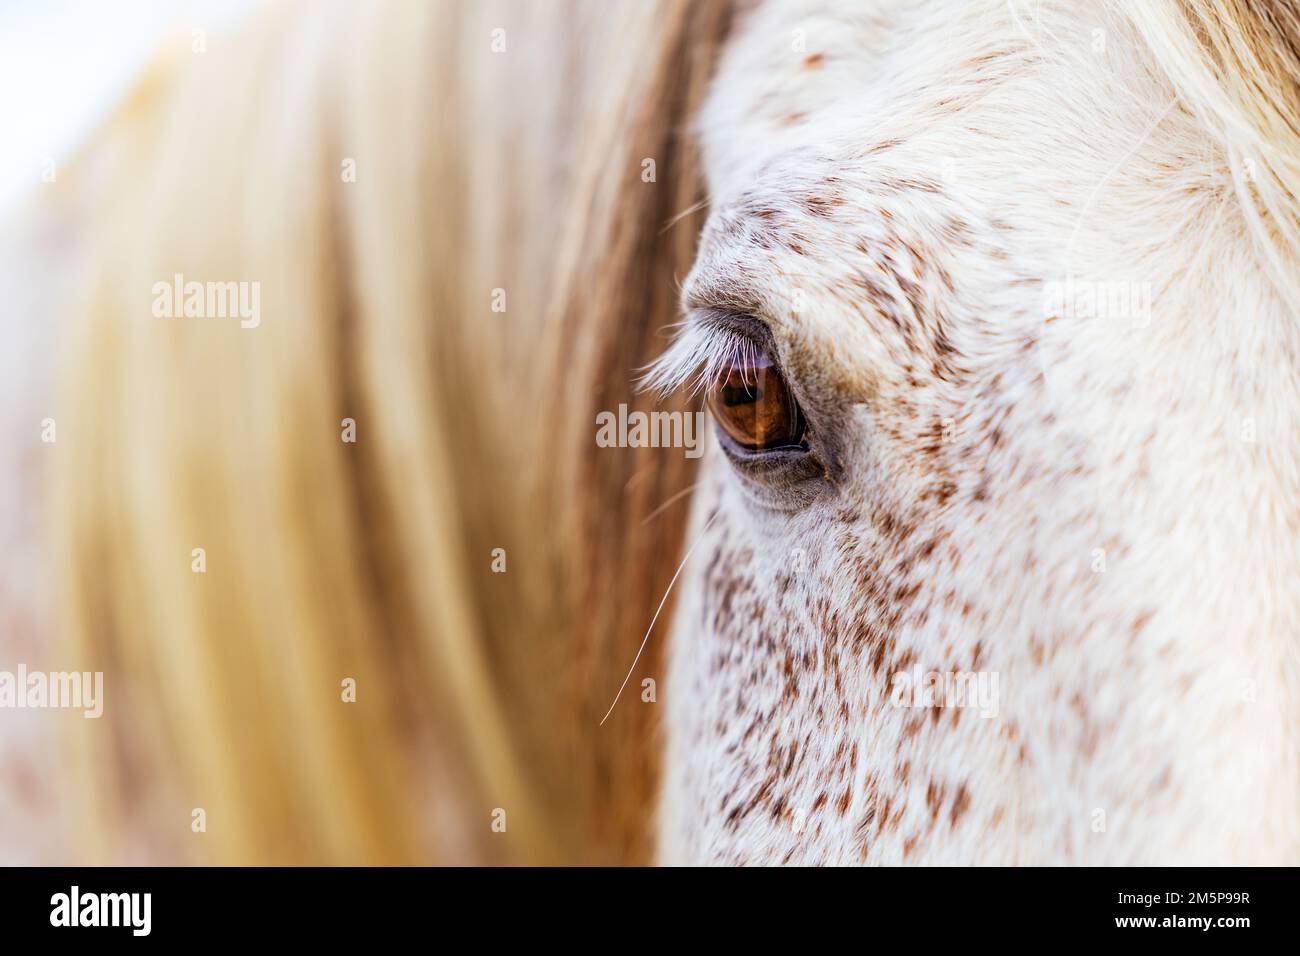 White Lusitano mare, eye details close up, horses eyes and mane. Stock Photo